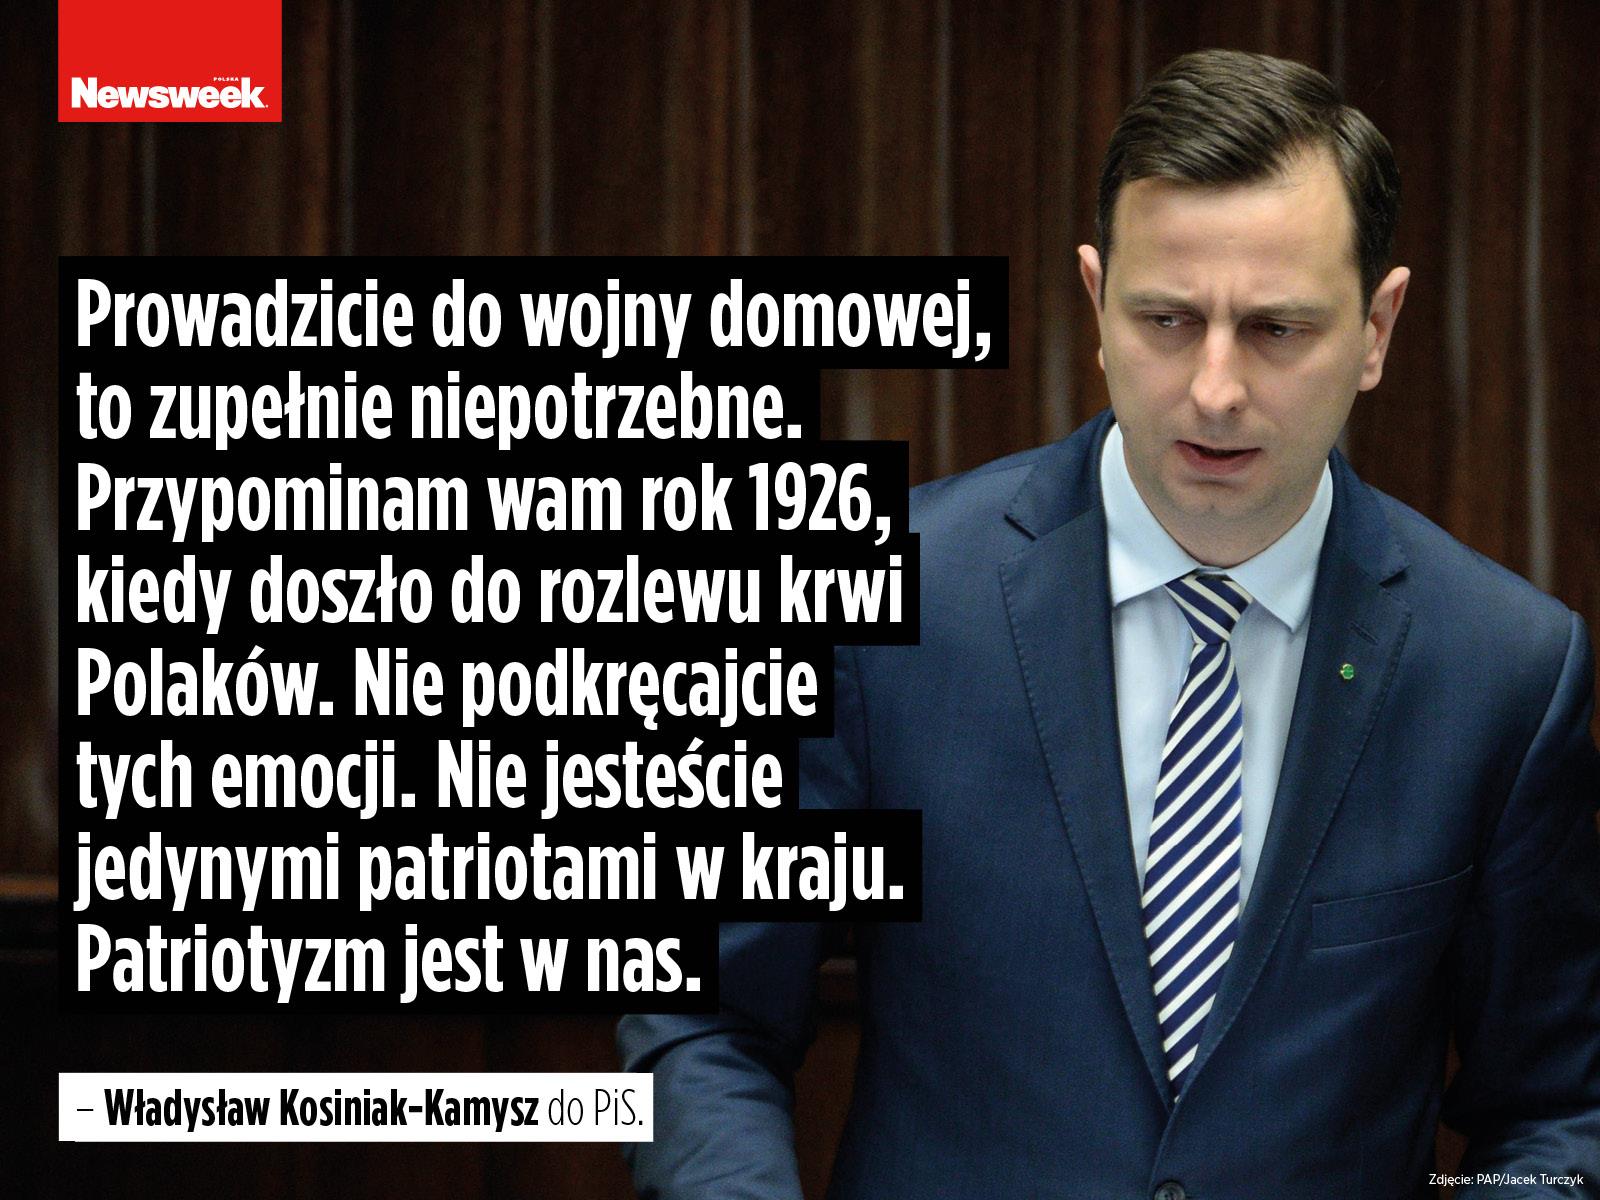 Władysław Kosiniak-Kamysz PSL polityka Sejm